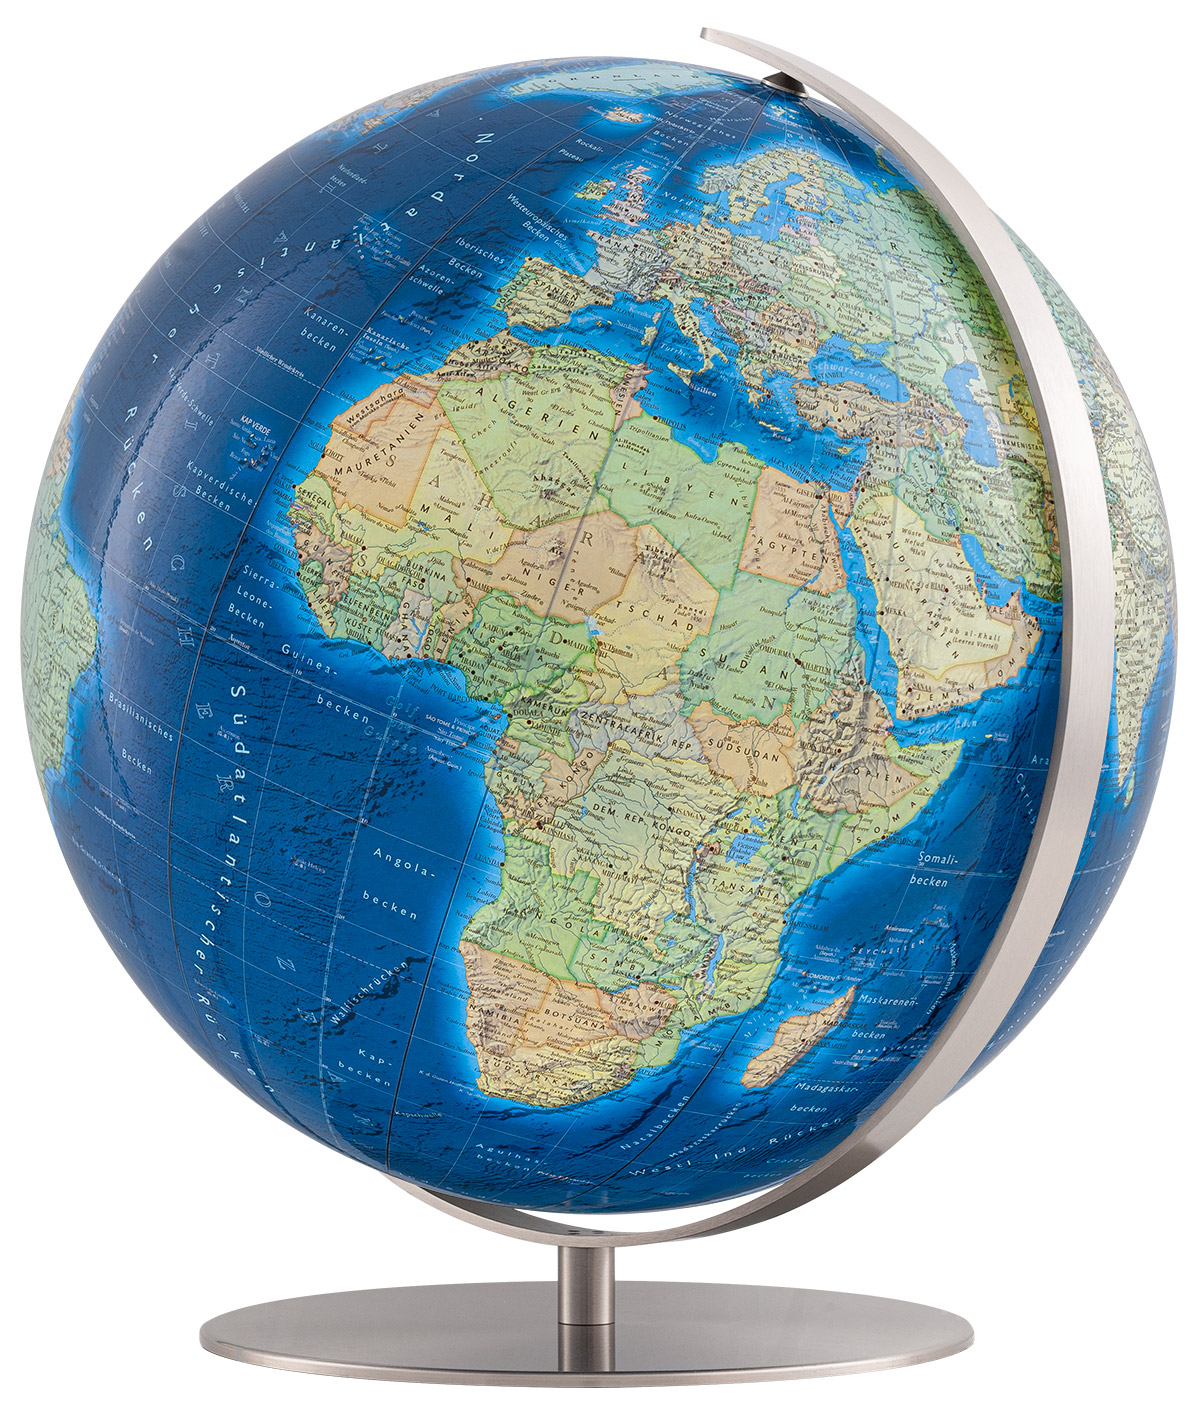 Acheter Columbus Duo 51cm globe sur pied Online